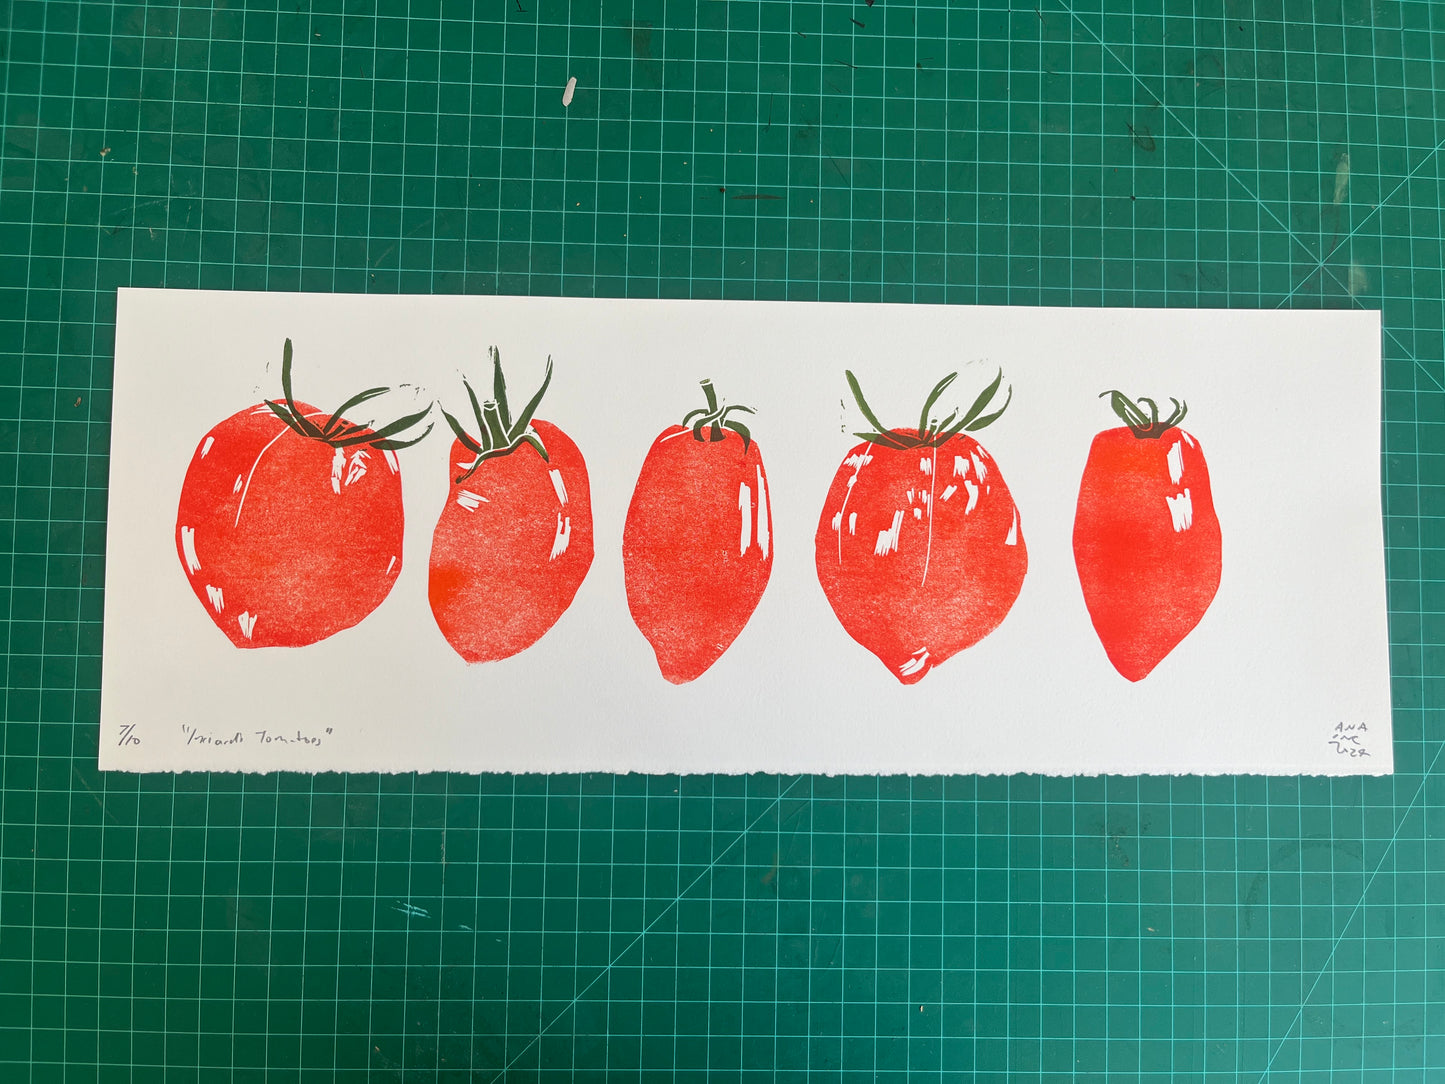 Inciardi Tomatoes